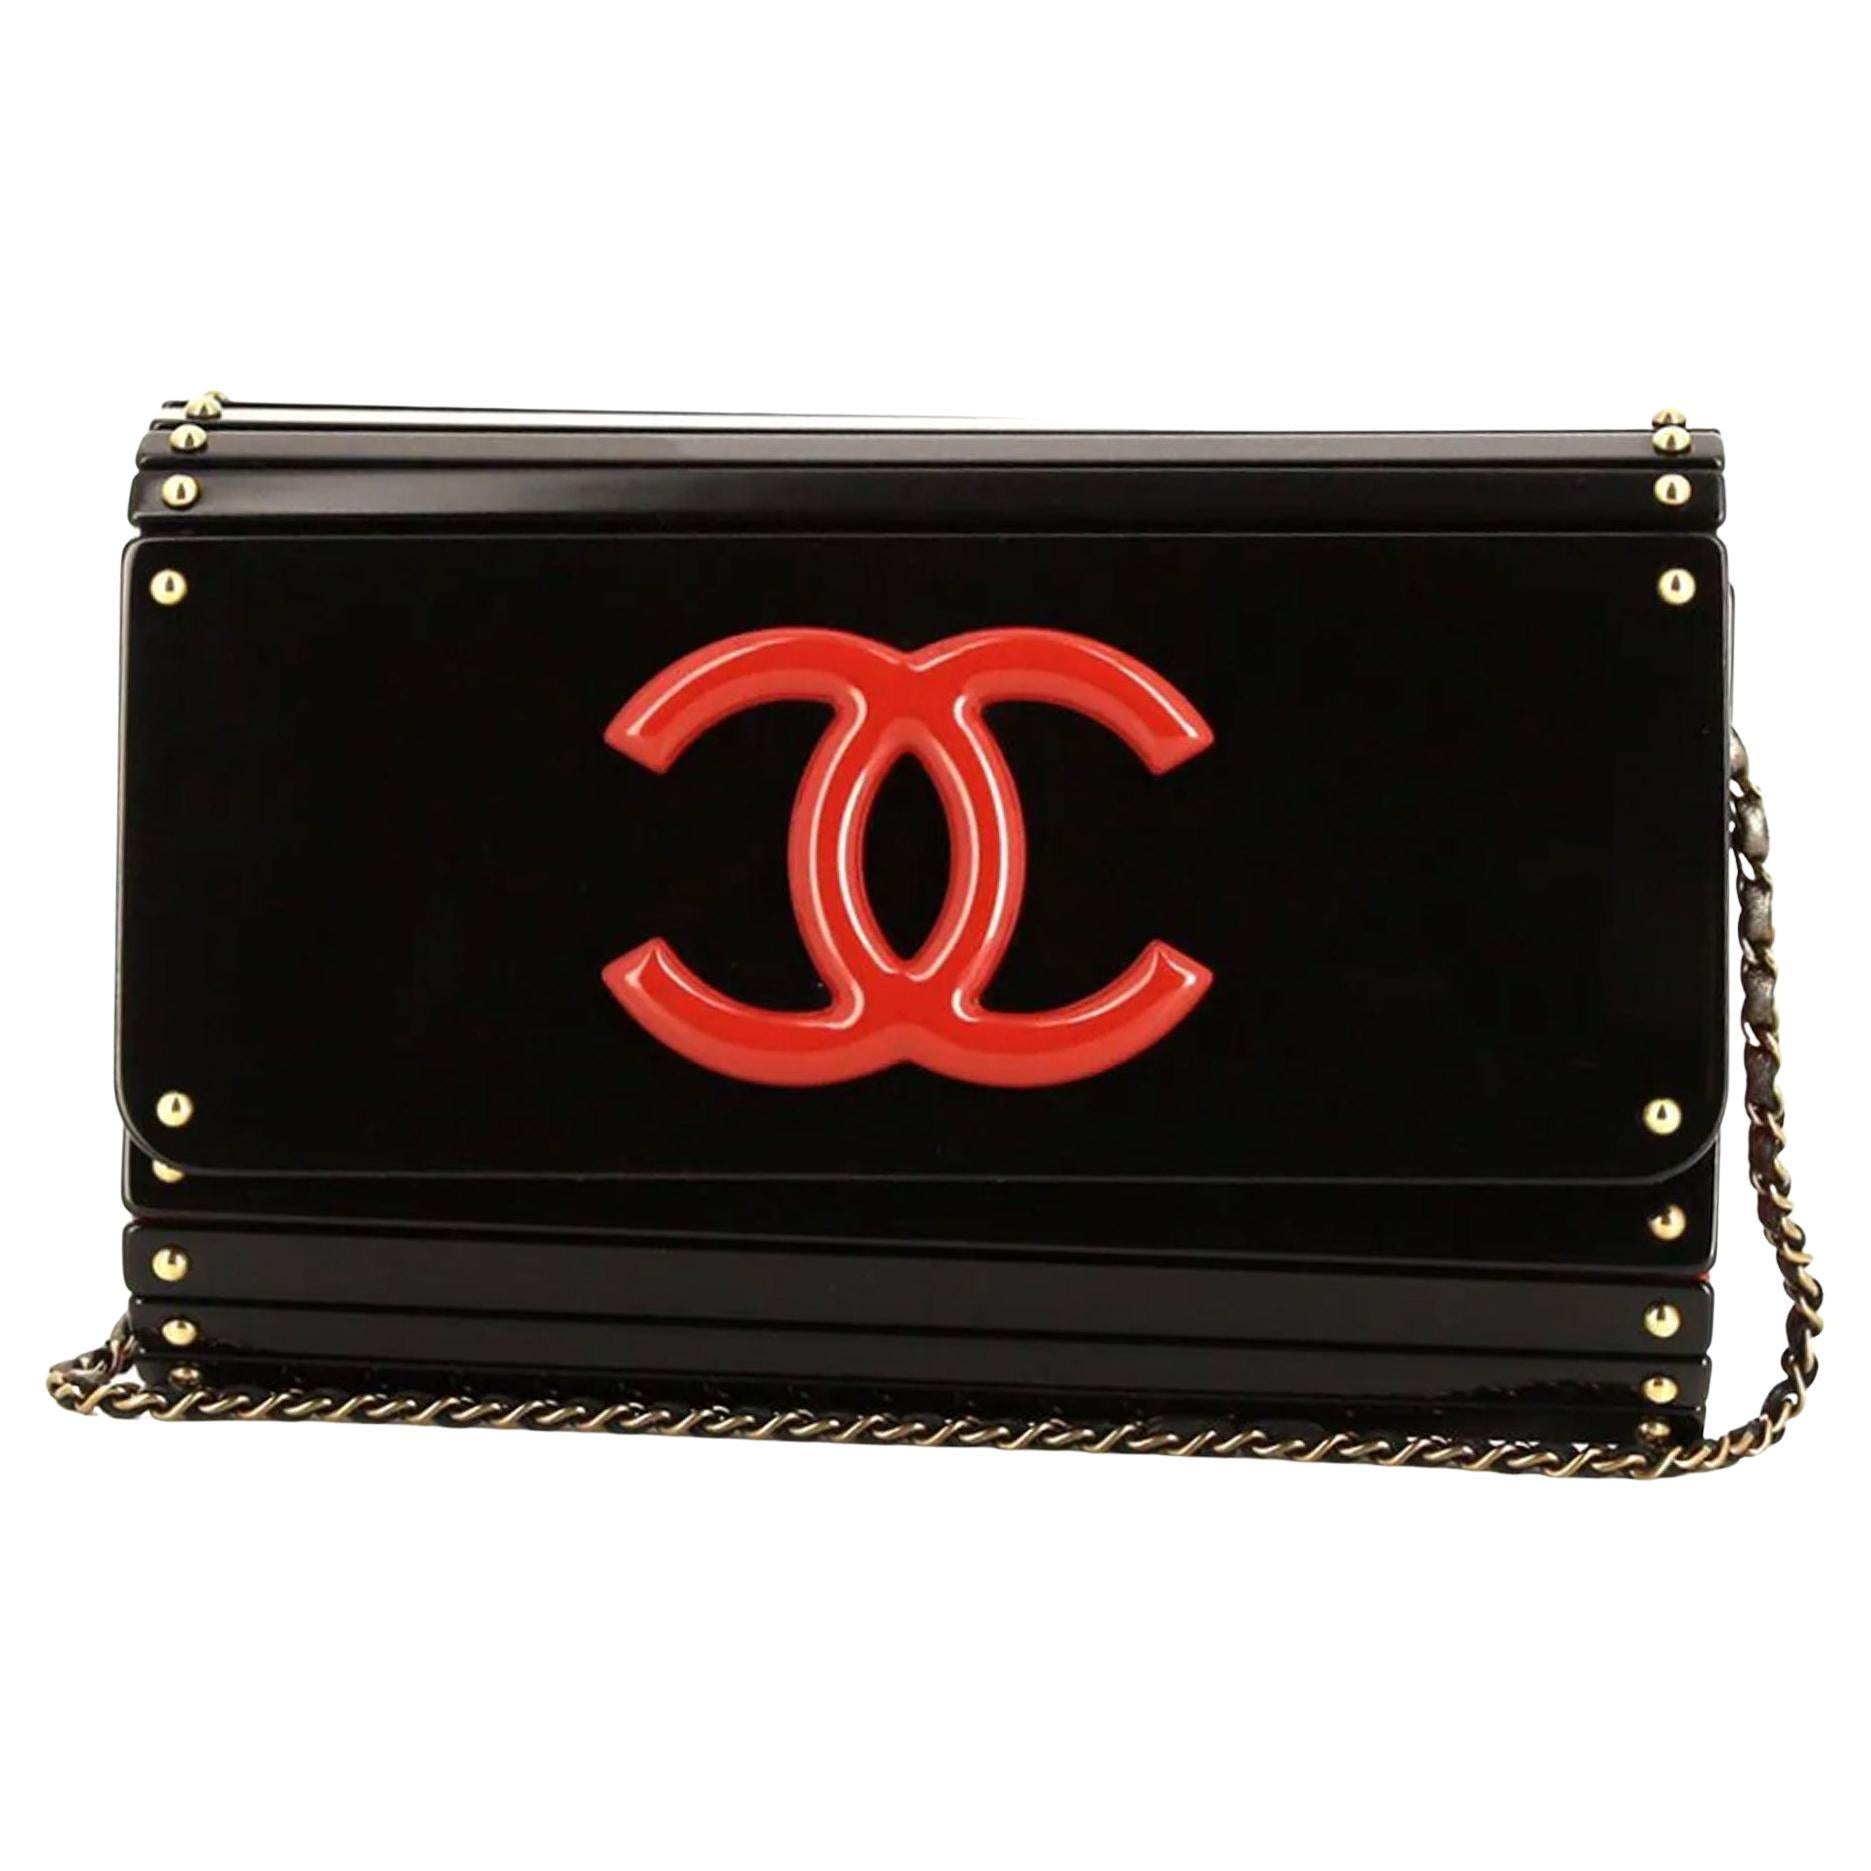 Chanel Vintage Red & Black Layered CC Shoulder Bag

vers 2009
noir/rouge
cuir
matériel de couleur dorée
logo CC interlocking signé
embellissement par des clous
top pliant
bracelet en cuir et chaîne

Fabriqué en Italie